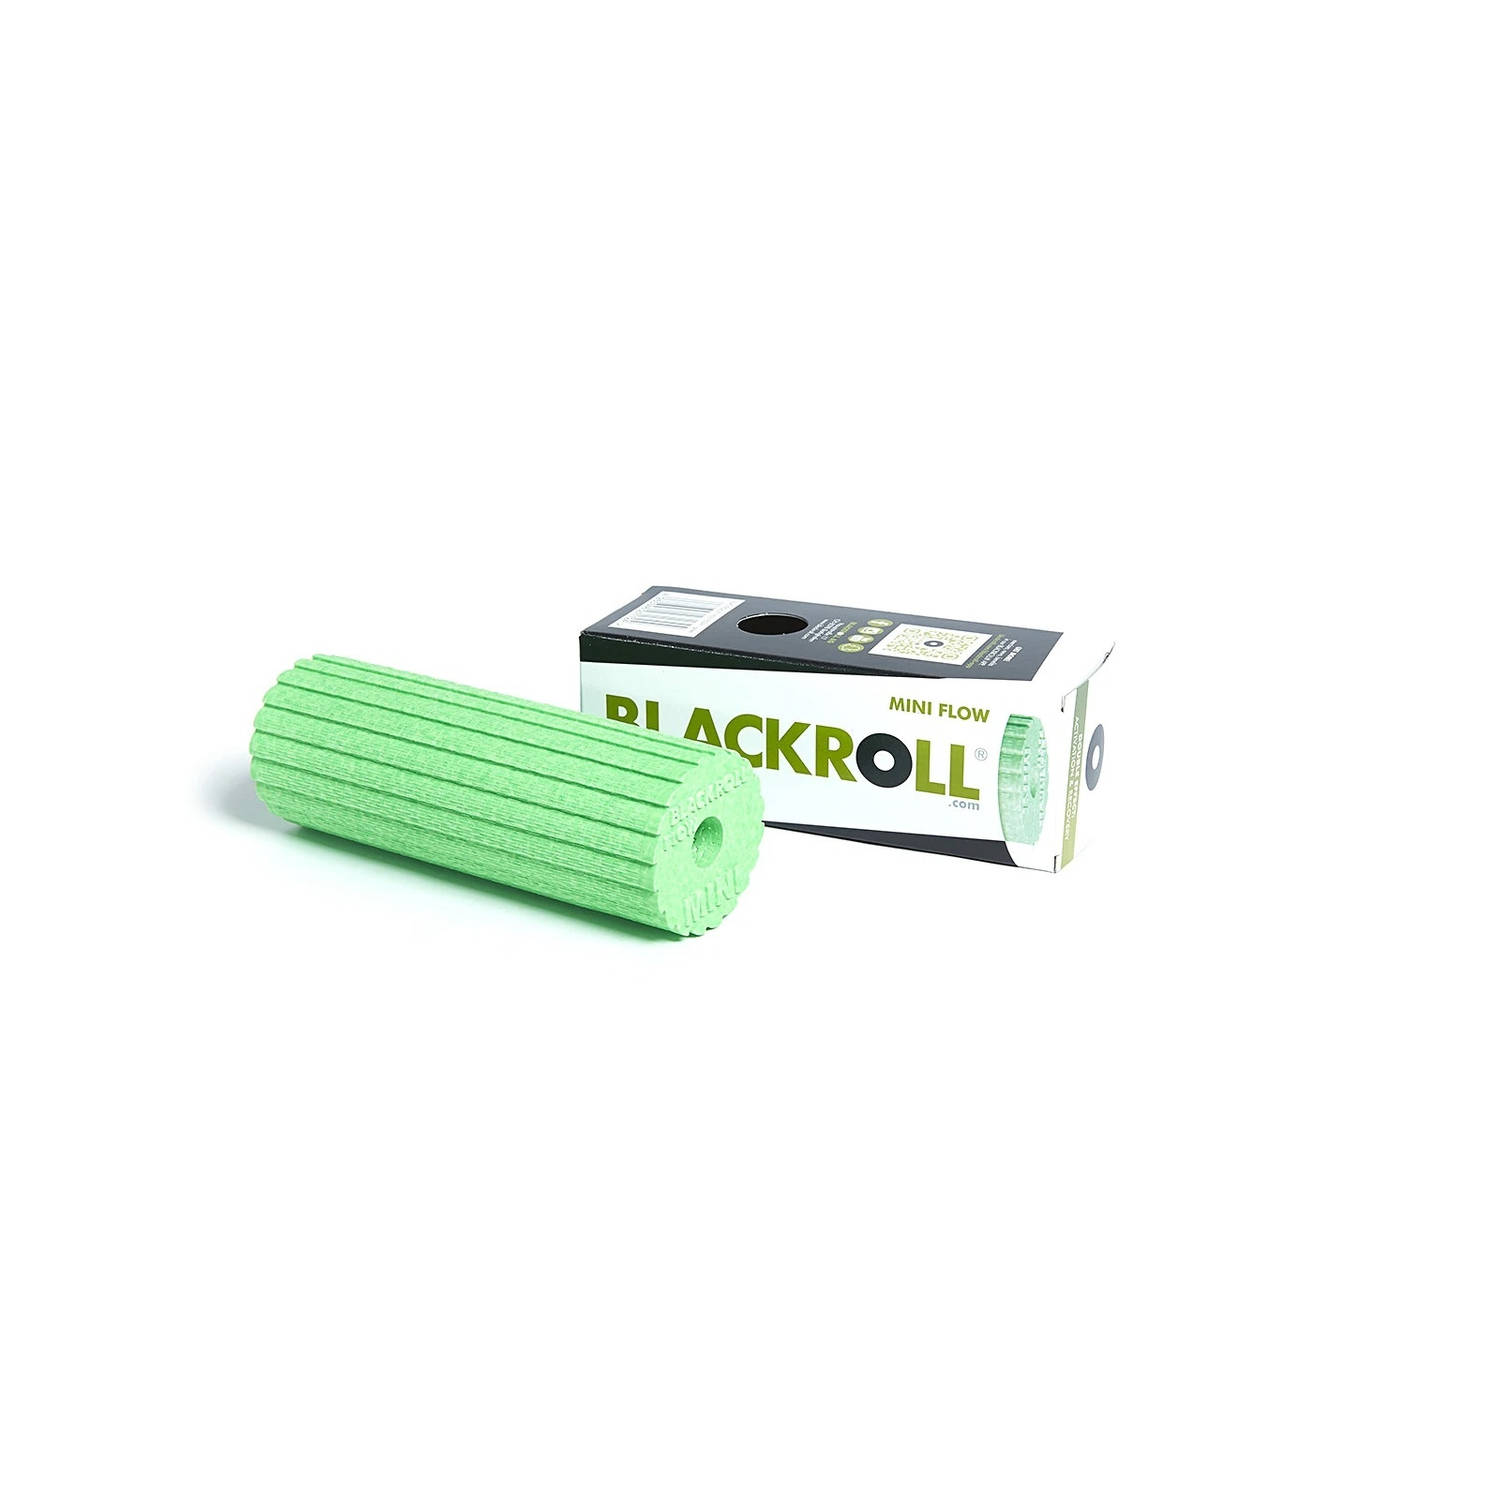 Blackroll MINI FLOW Foam Roller - Groen